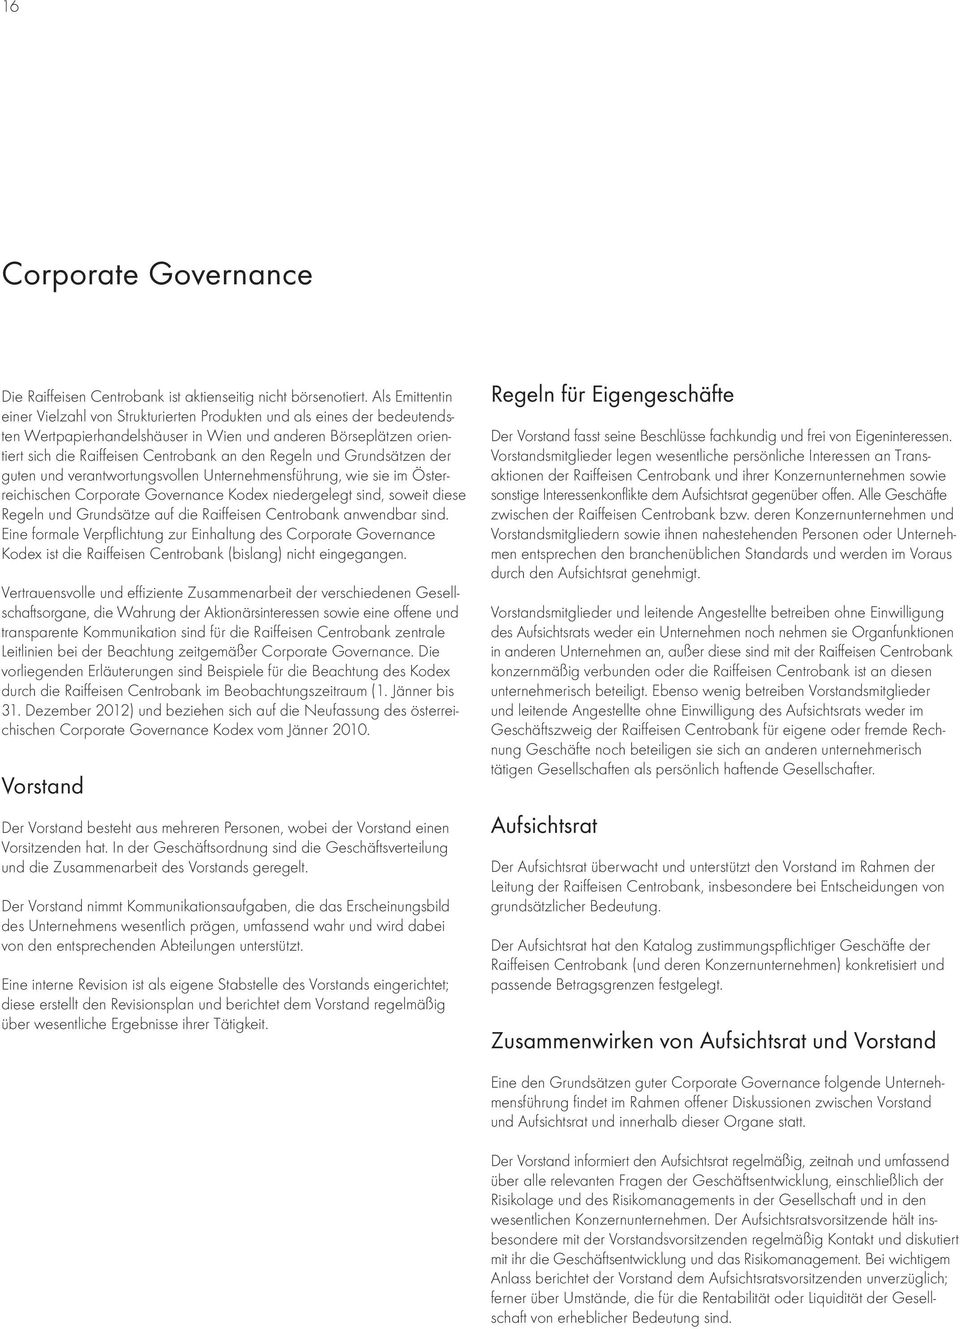 Regeln und Grundsätzen der guten und verantwortungsvollen Unternehmensführung, wie sie im Österreichischen Corporate Governance Kodex niedergelegt sind, soweit diese Regeln und Grundsätze auf die